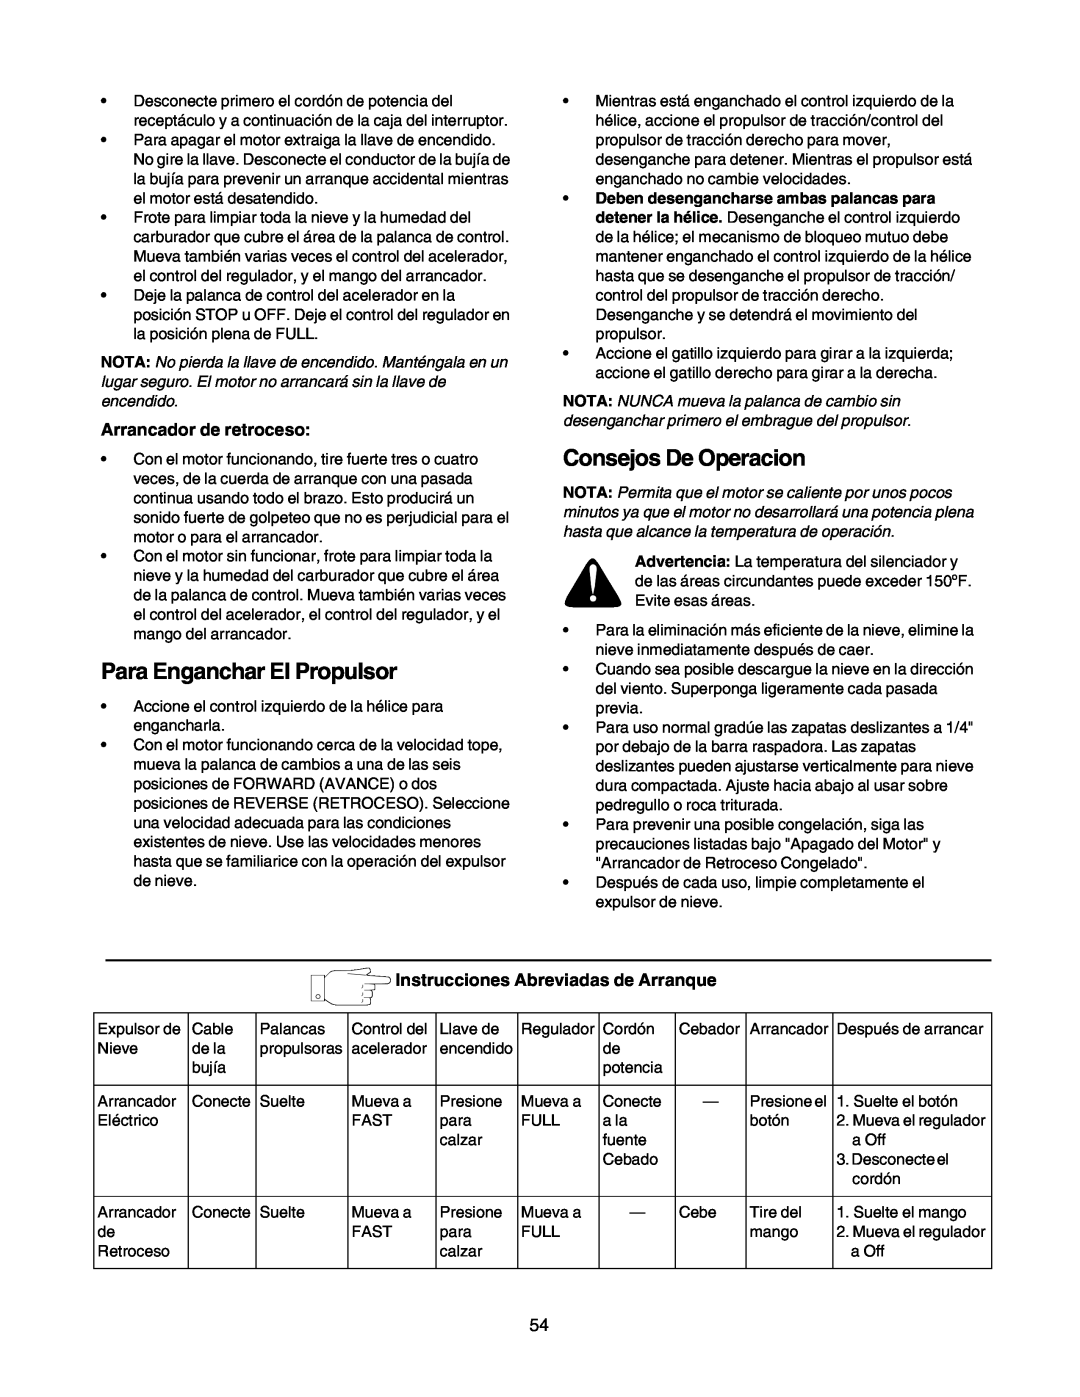 Craftsman 247.88855 owner manual Para Enganchar El Propulsor, Consejos De Operacion, Arrancador de retroceso 